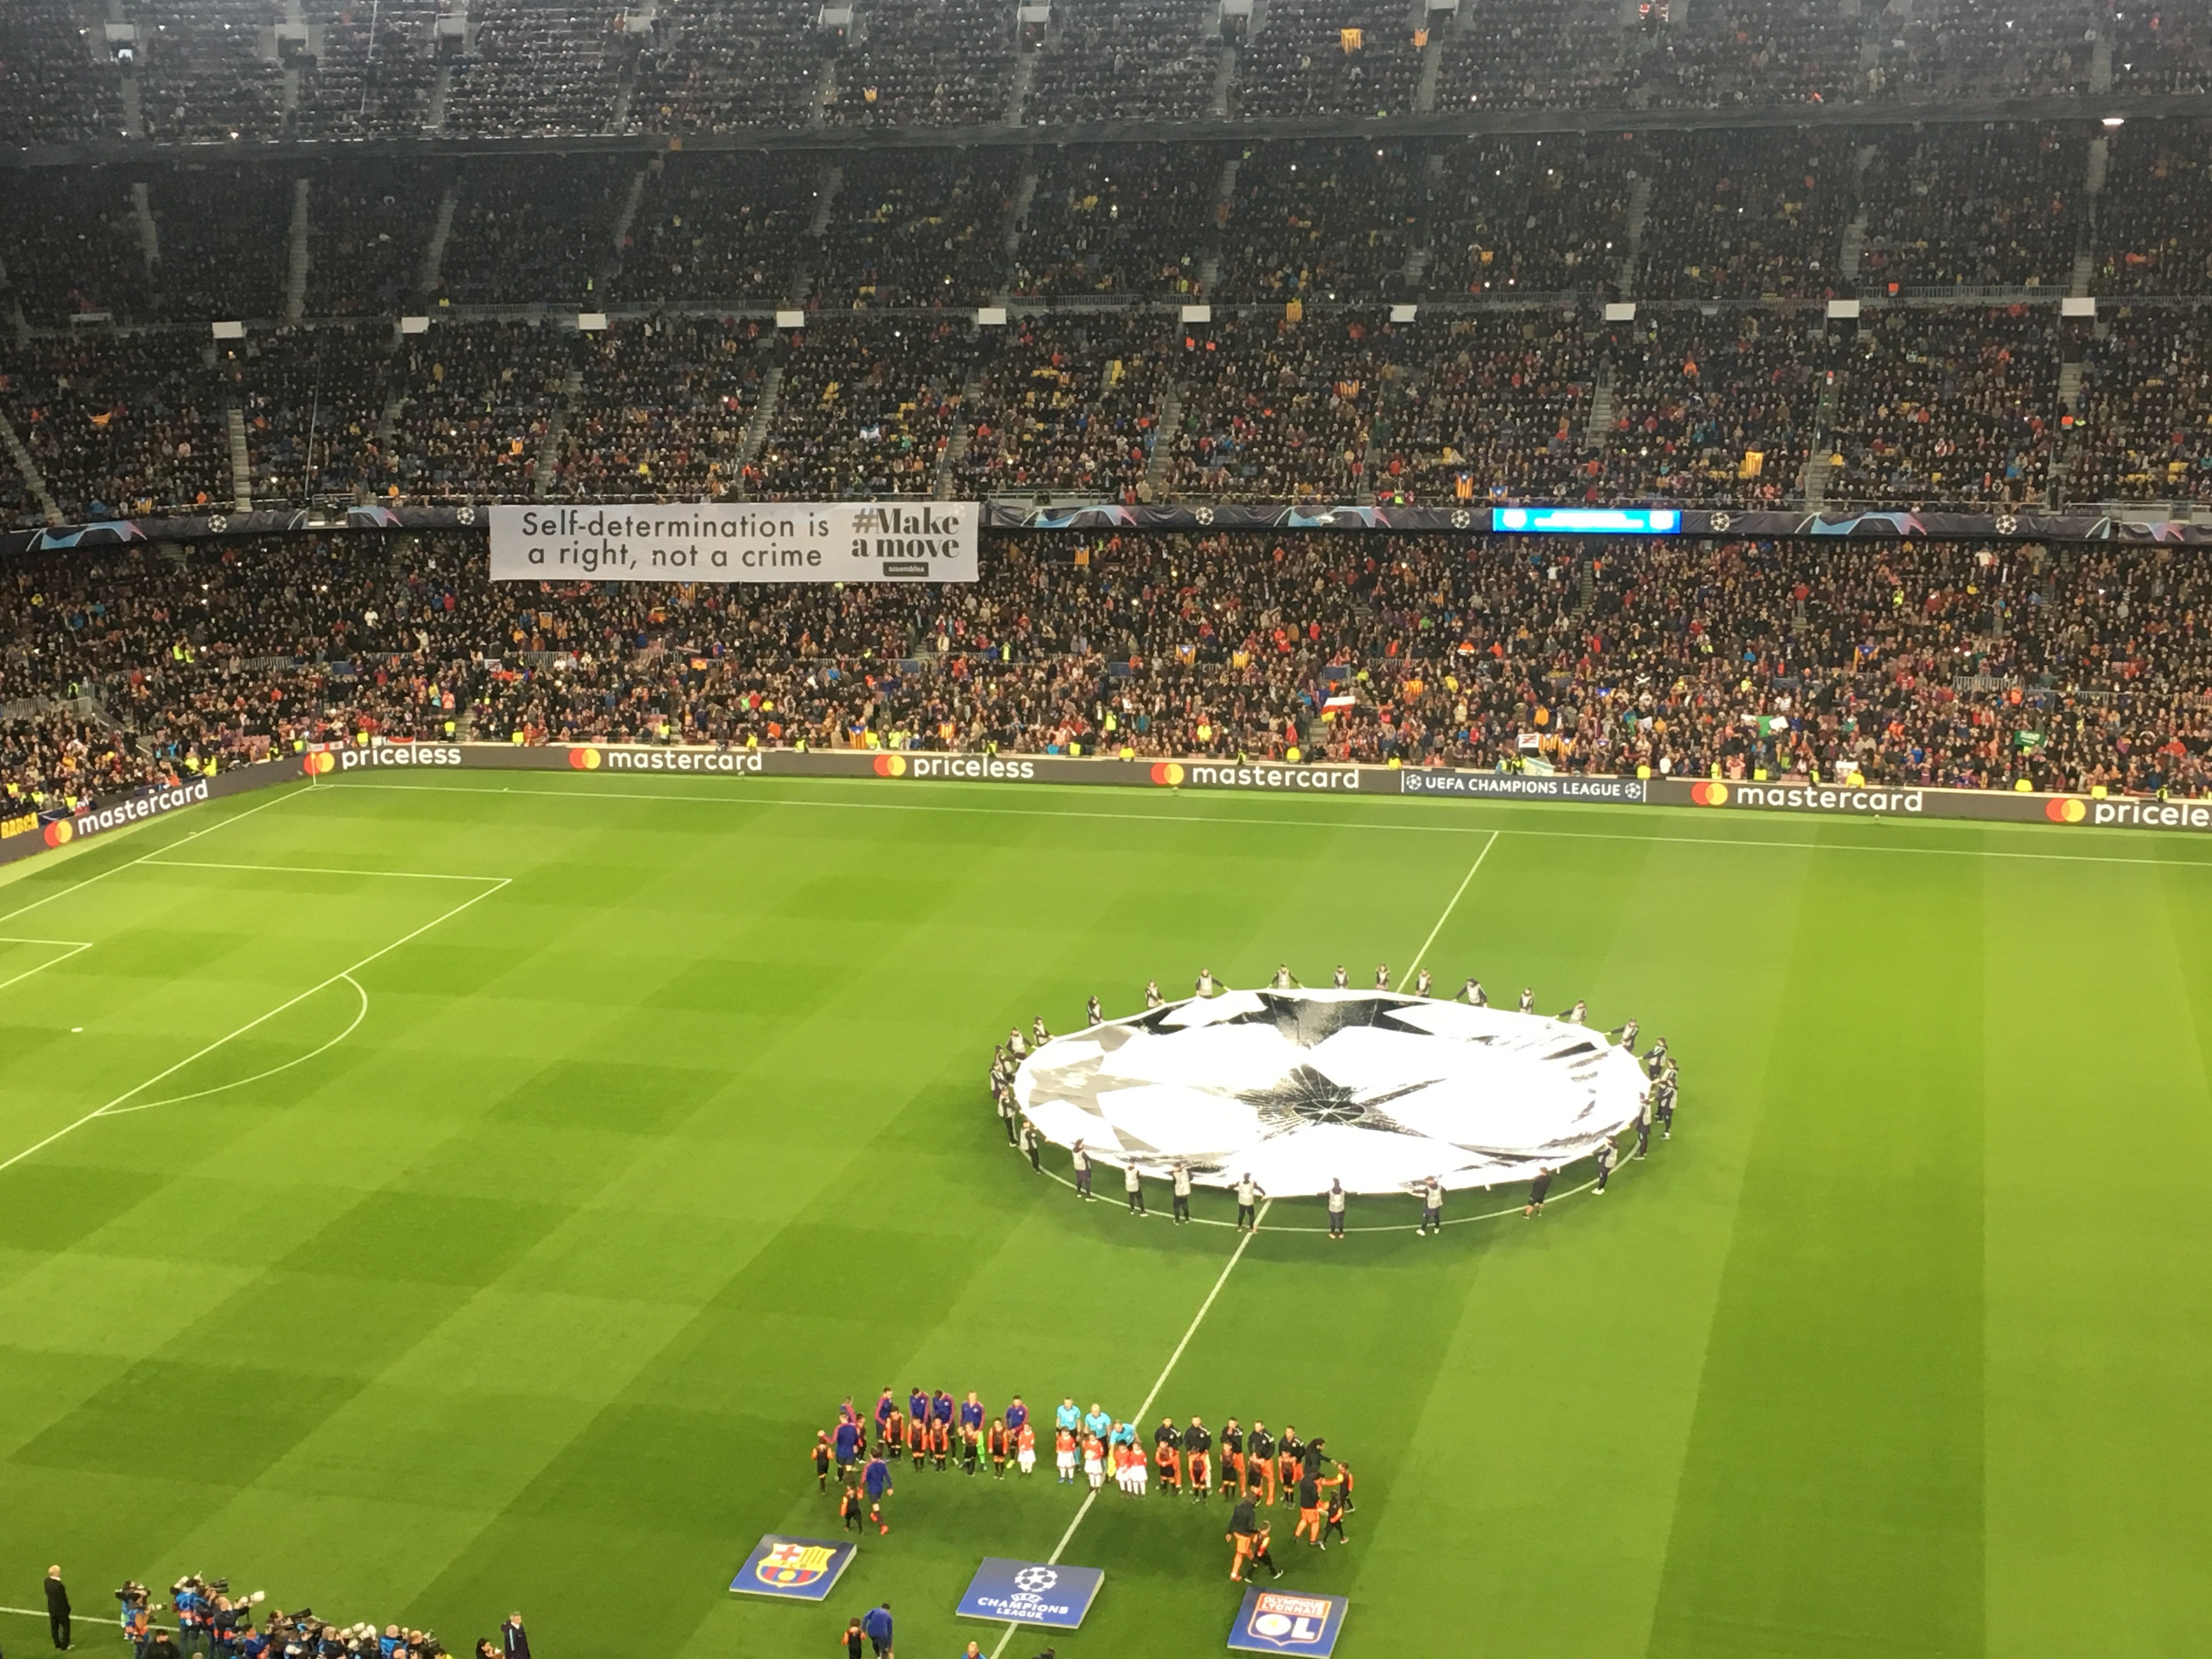 Mensaje del Camp Nou a Europa: "La autodeterminación es un derecho, no un delito"